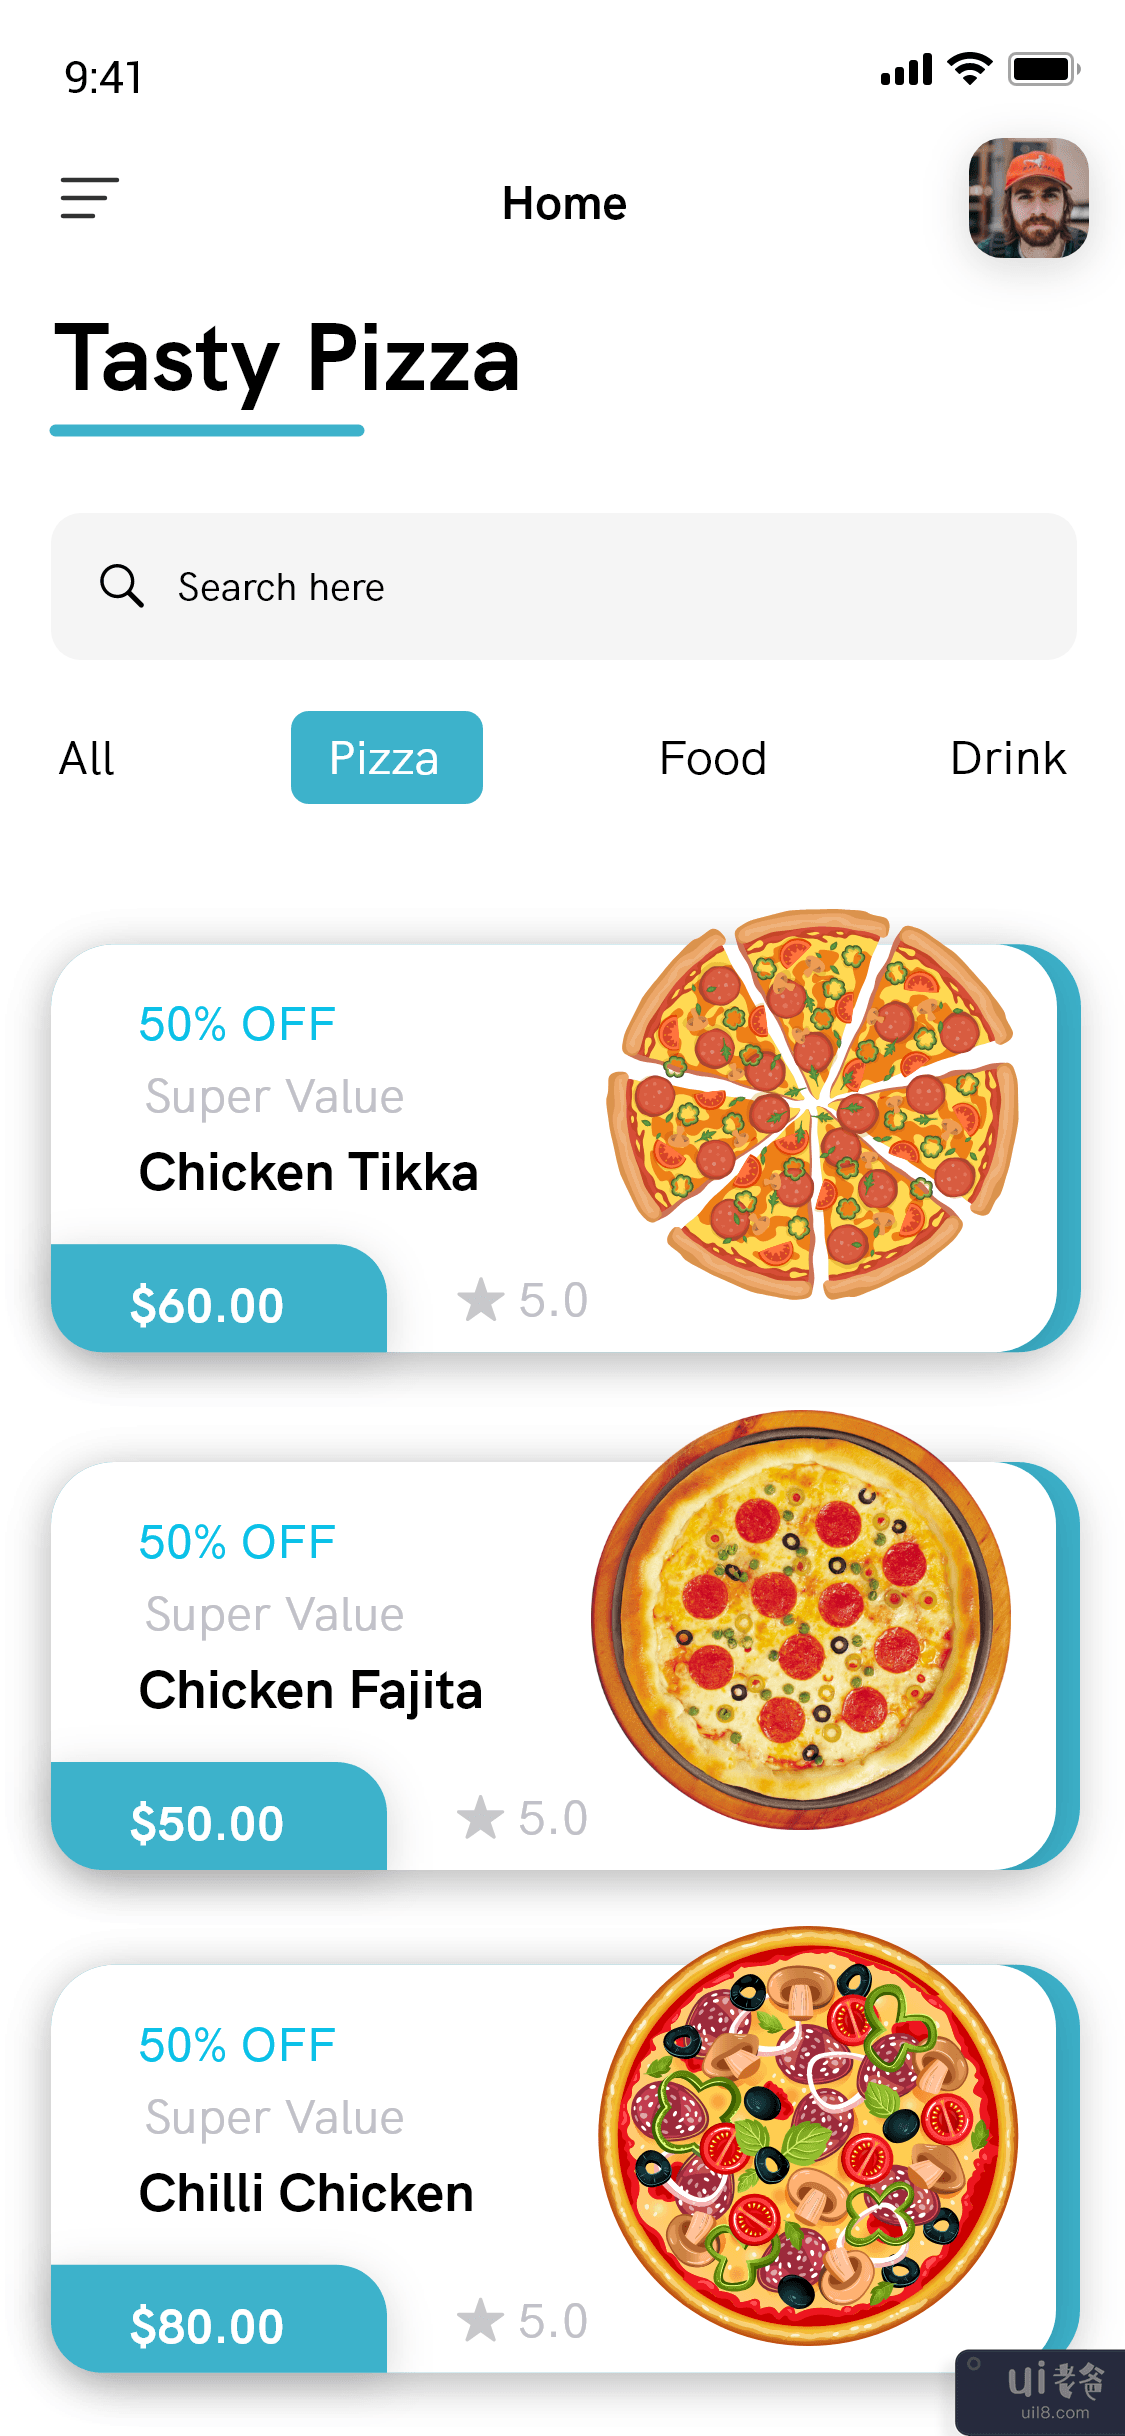 比萨配送应用程序 - 食品配送应用程序(Pizza Delivery app - Food Delivery App)插图2